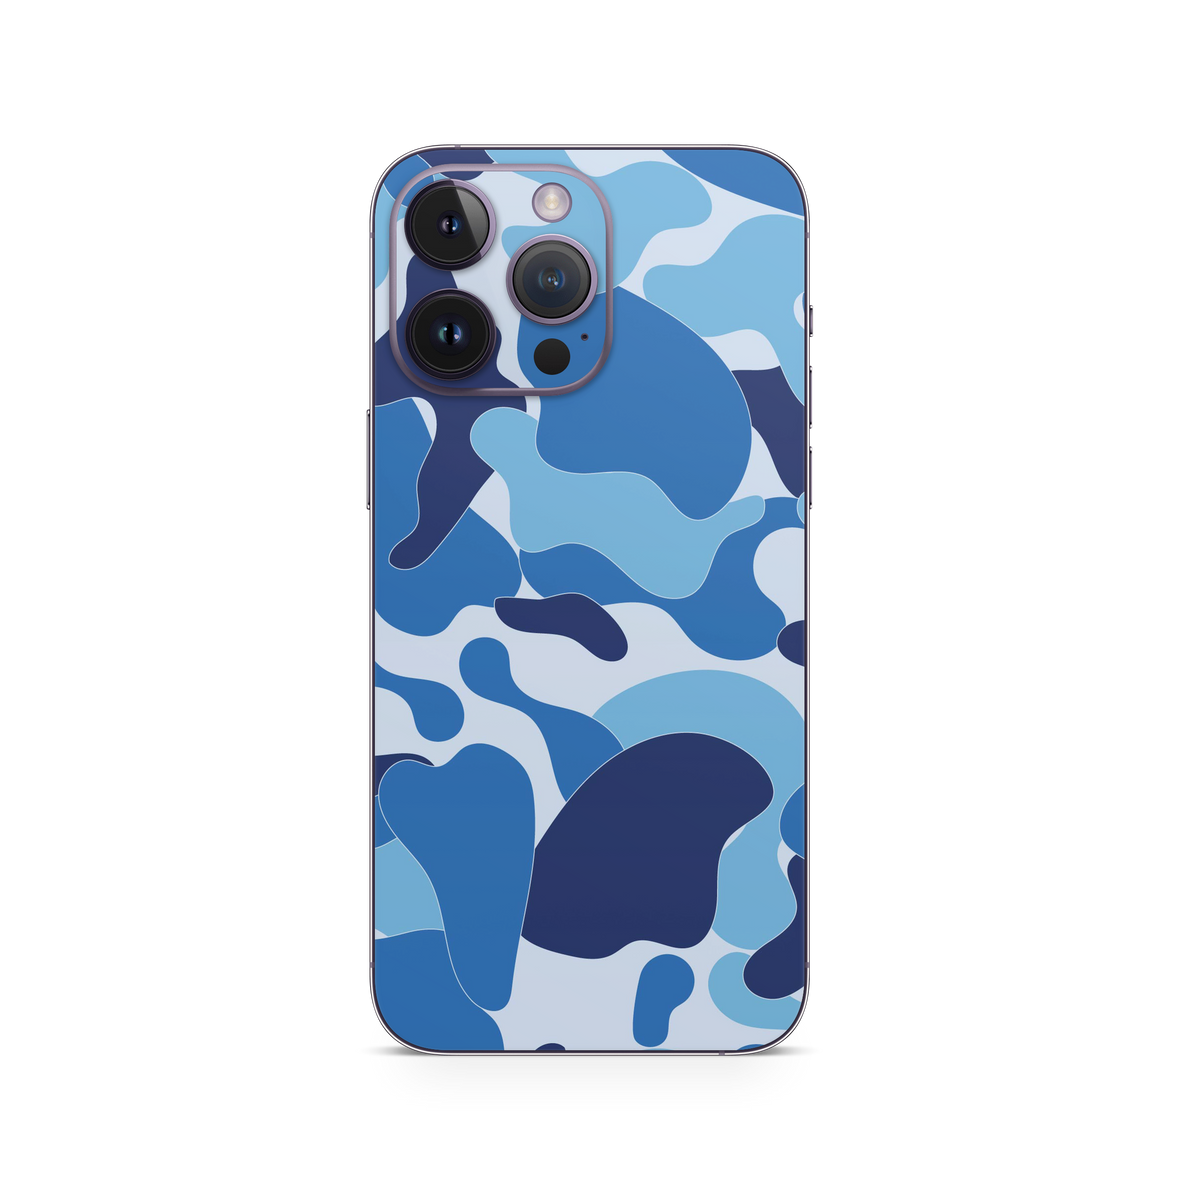 Apple iPhone Ape Camo Blue Skin